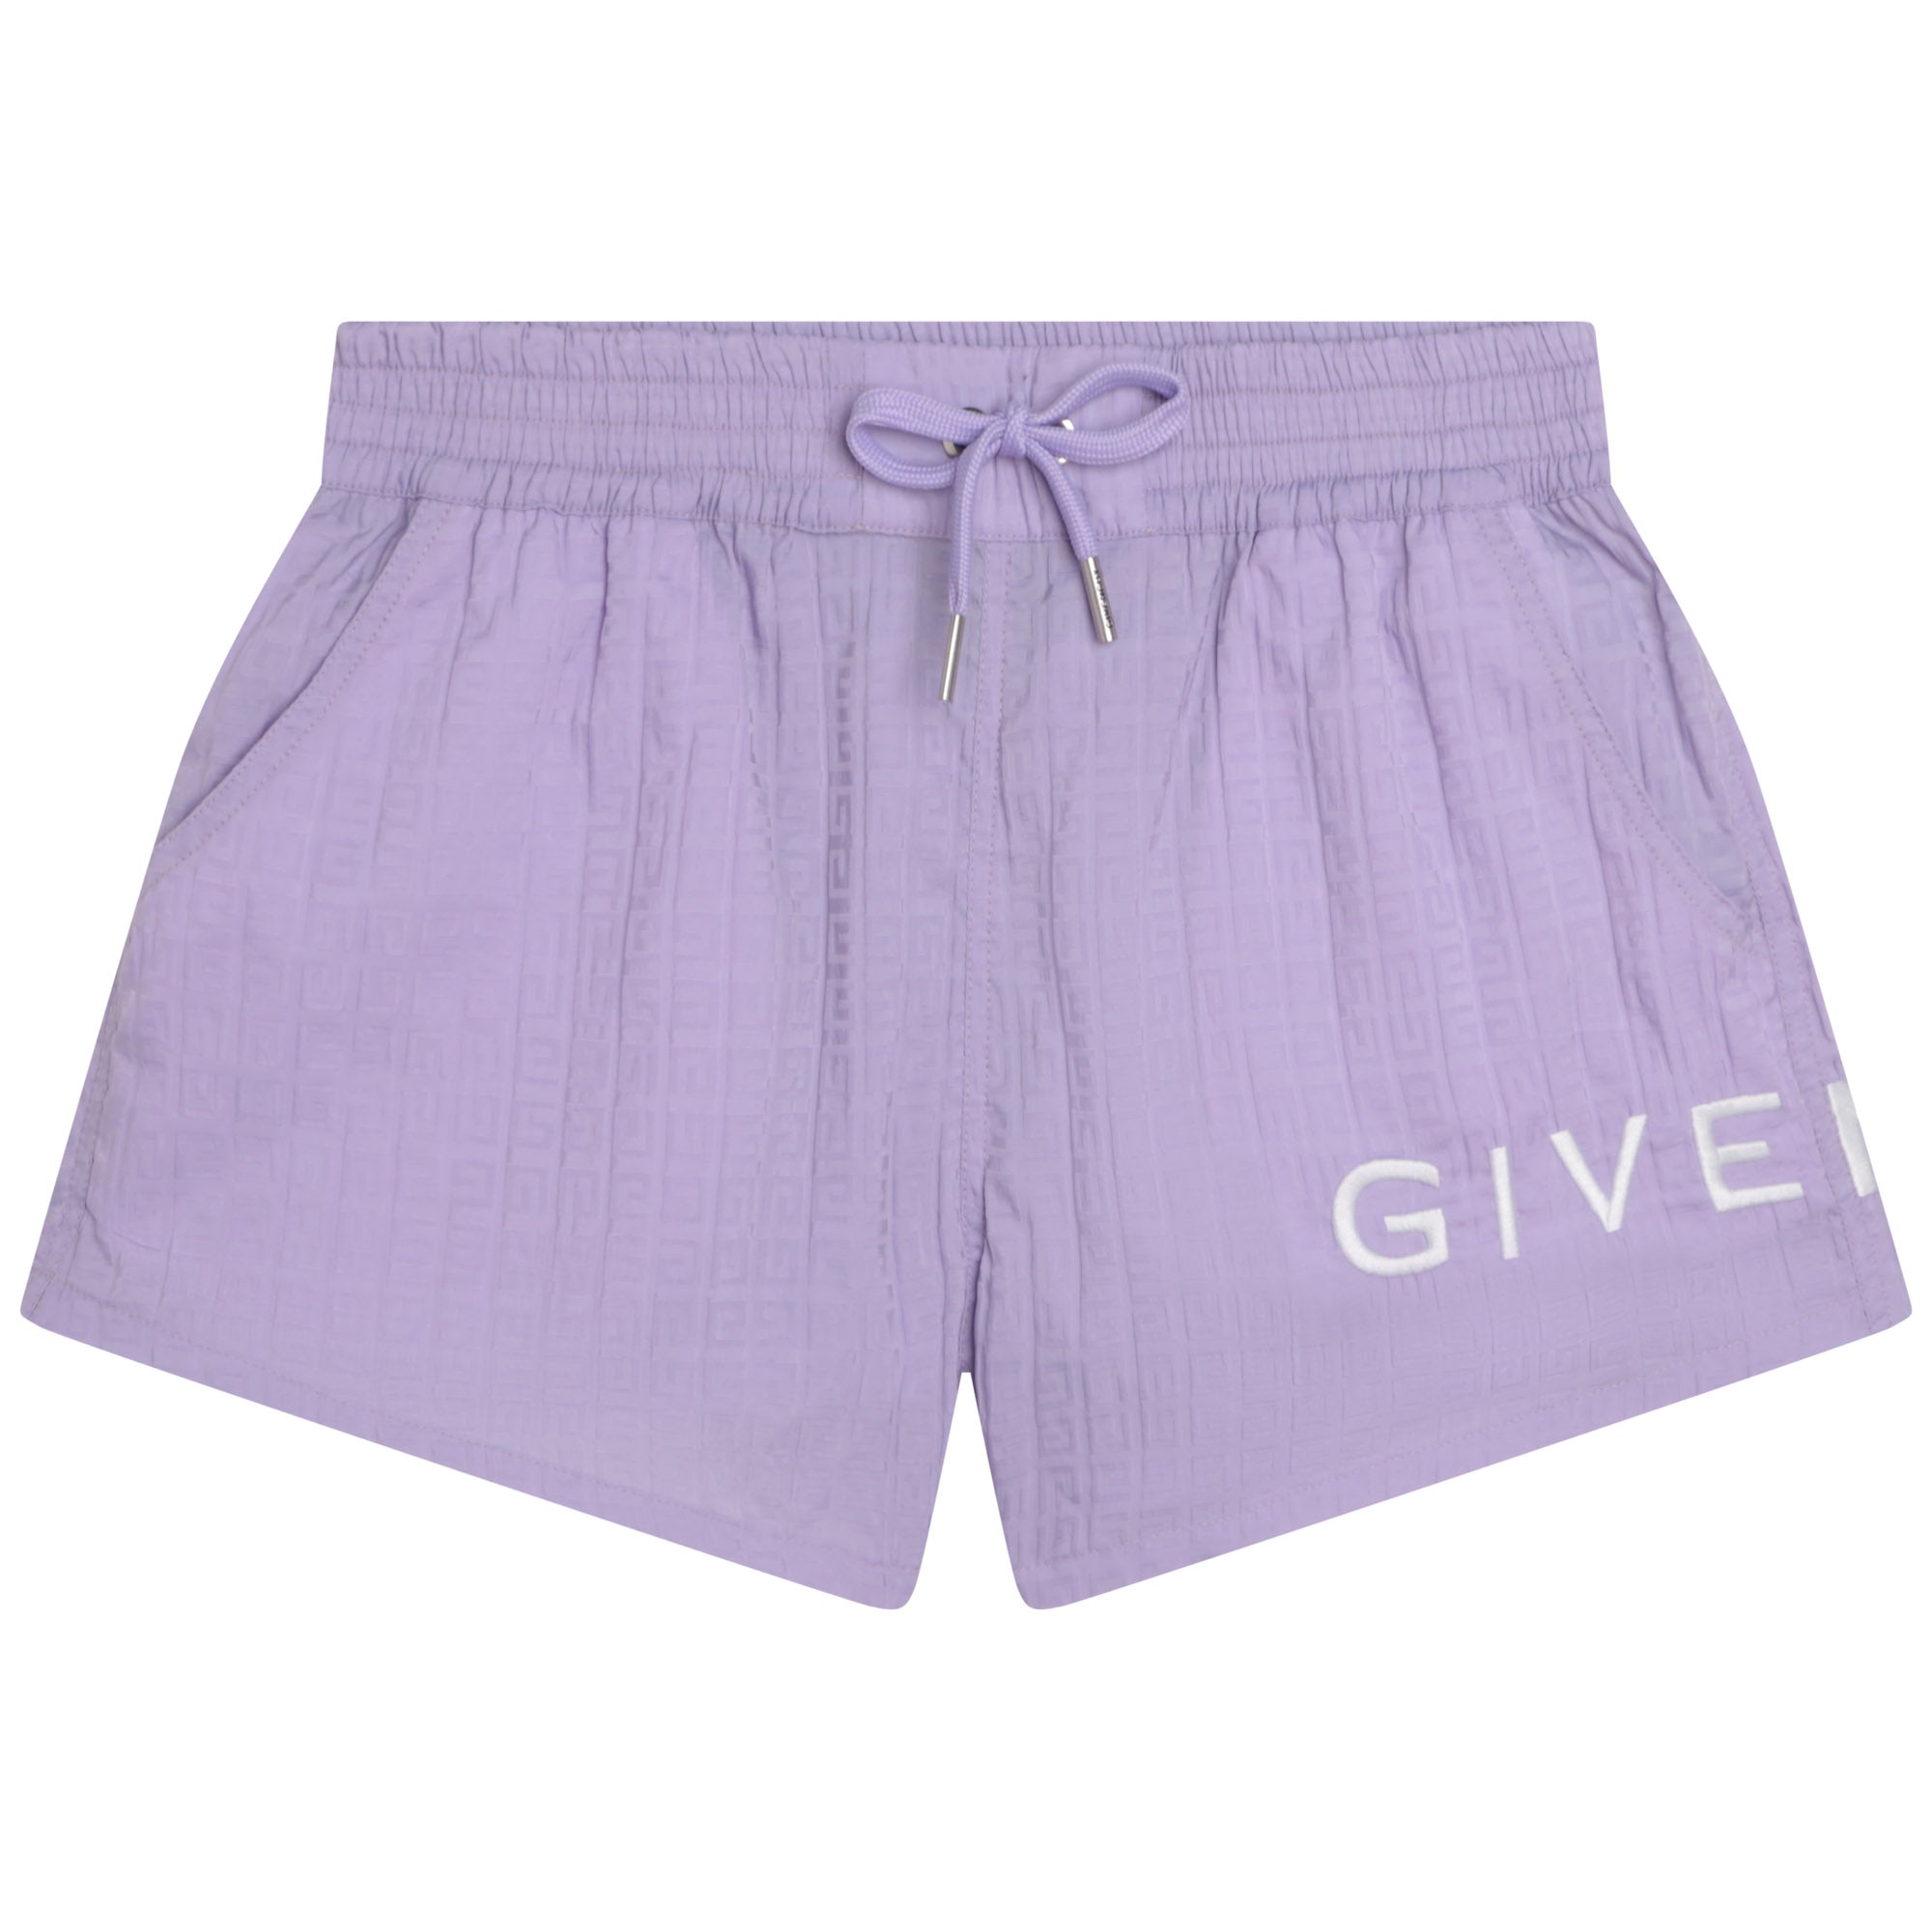 Givenchy Lilac Shorts